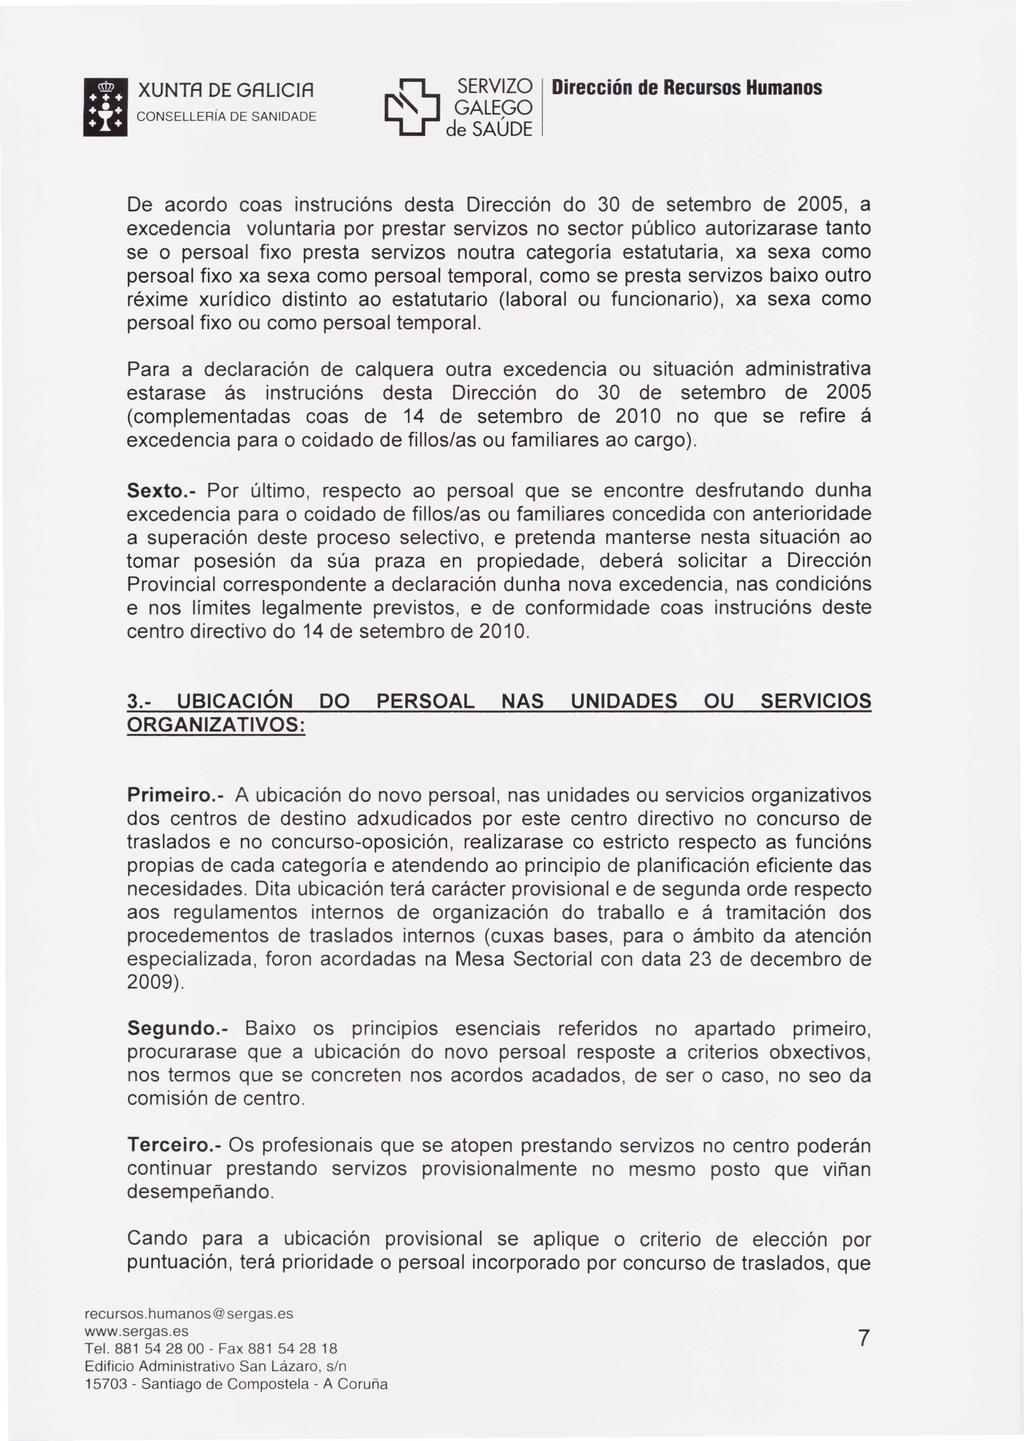 XUNTA DEGAlletA HCONSELLERiA DE SANIDADE ~ De acordo coas instrucións desta Dirección do 30 de setembro de 2005, a excedencia voluntaria por prestar servizos no sector público autorizarase tanto se o